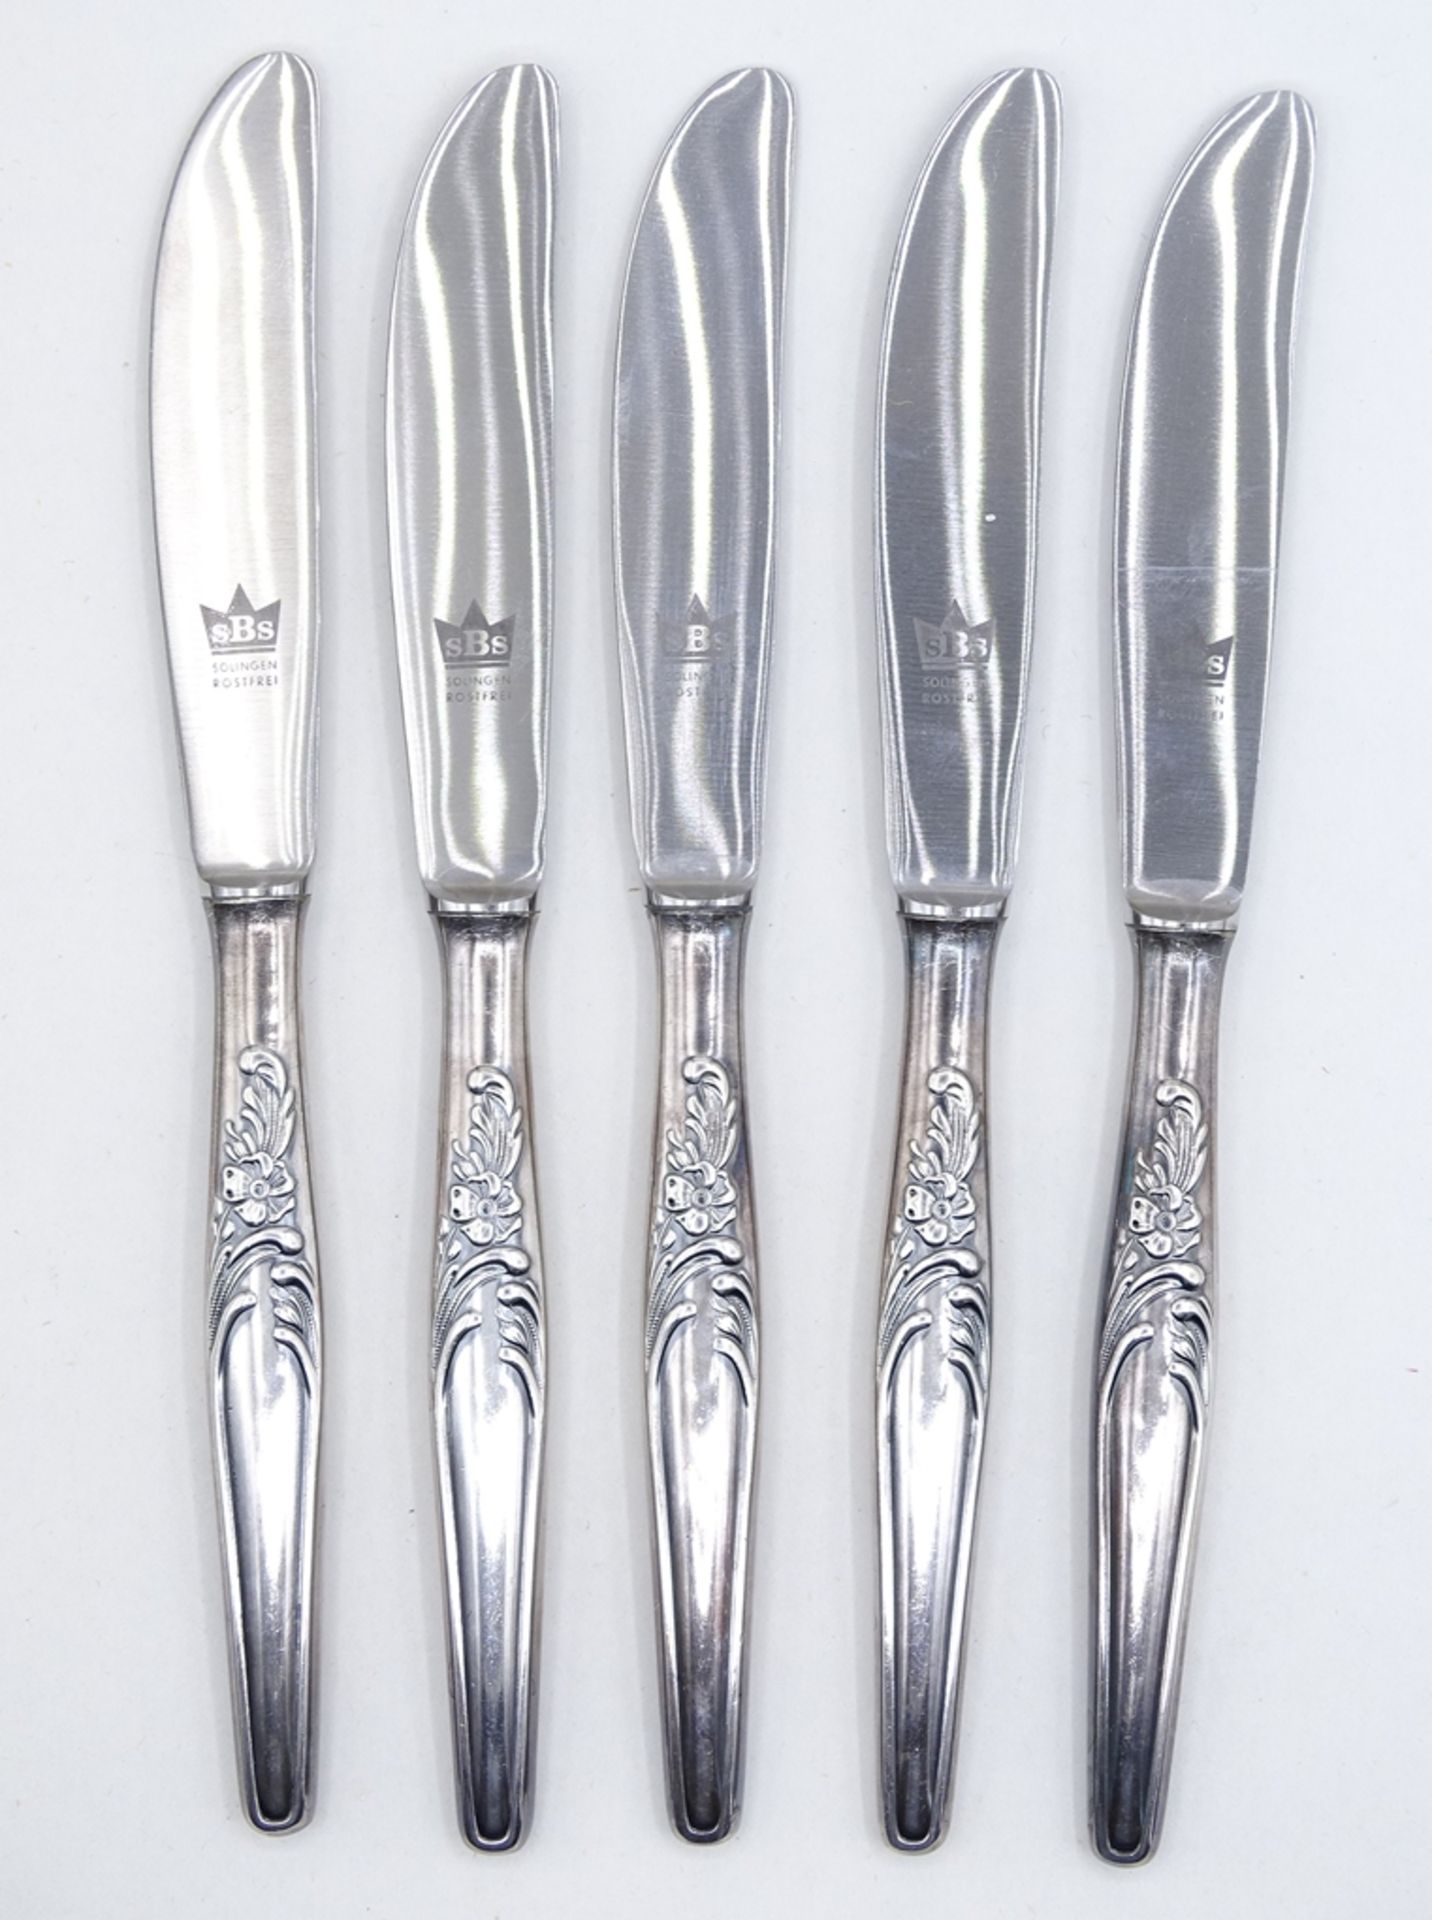 6 Buttermesser, SBS Solingen, mit 100er-Silberauflage, L. 17 cm, leicht reinigungsbedürftig - Bild 3 aus 6